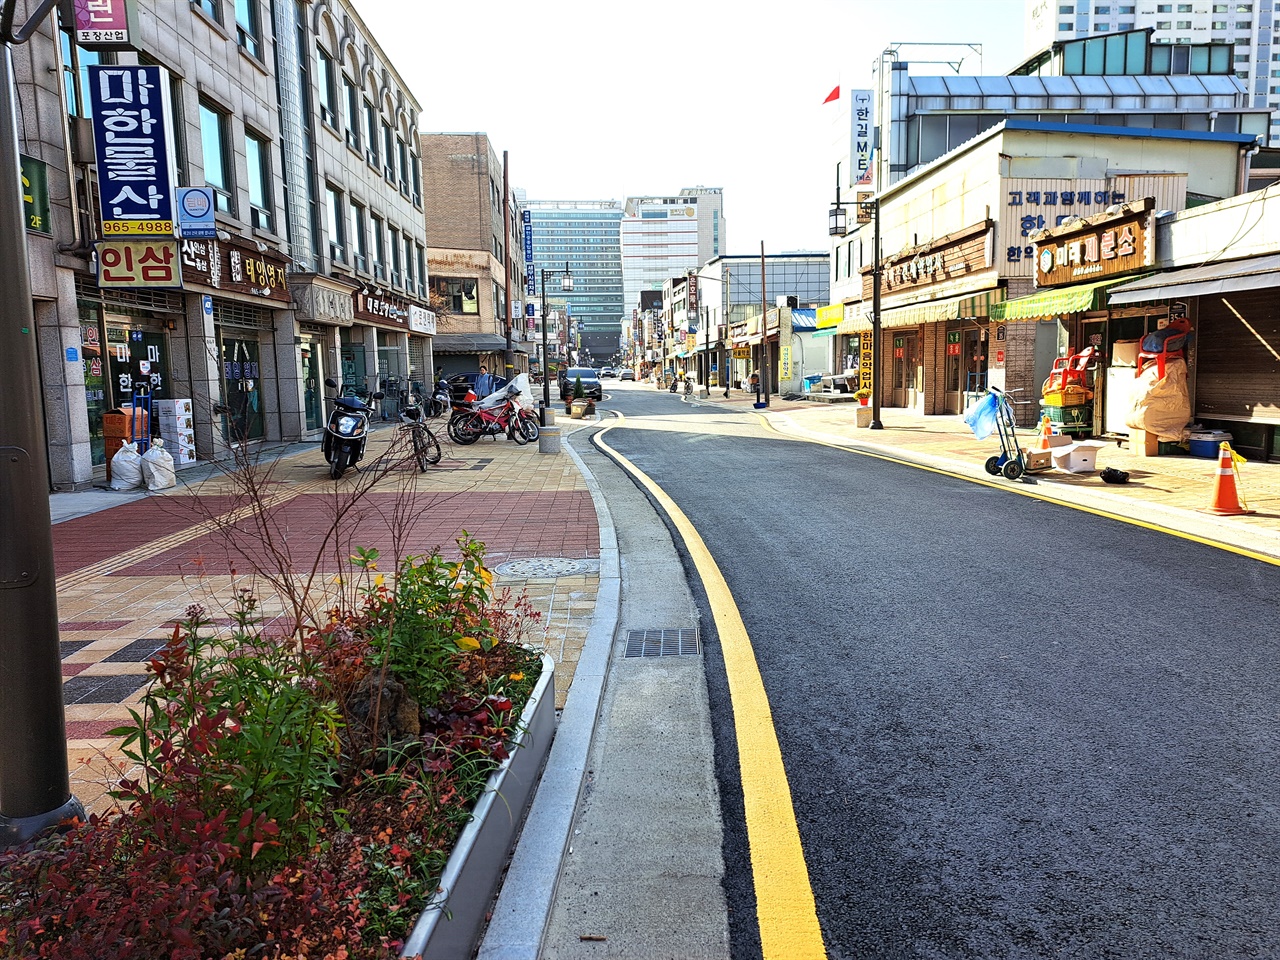 잘 정돈된 서울 약령시 내부 가로 모습. 최근 새로 단장하여 공간의 환경이 획기적으로 개선되었다.